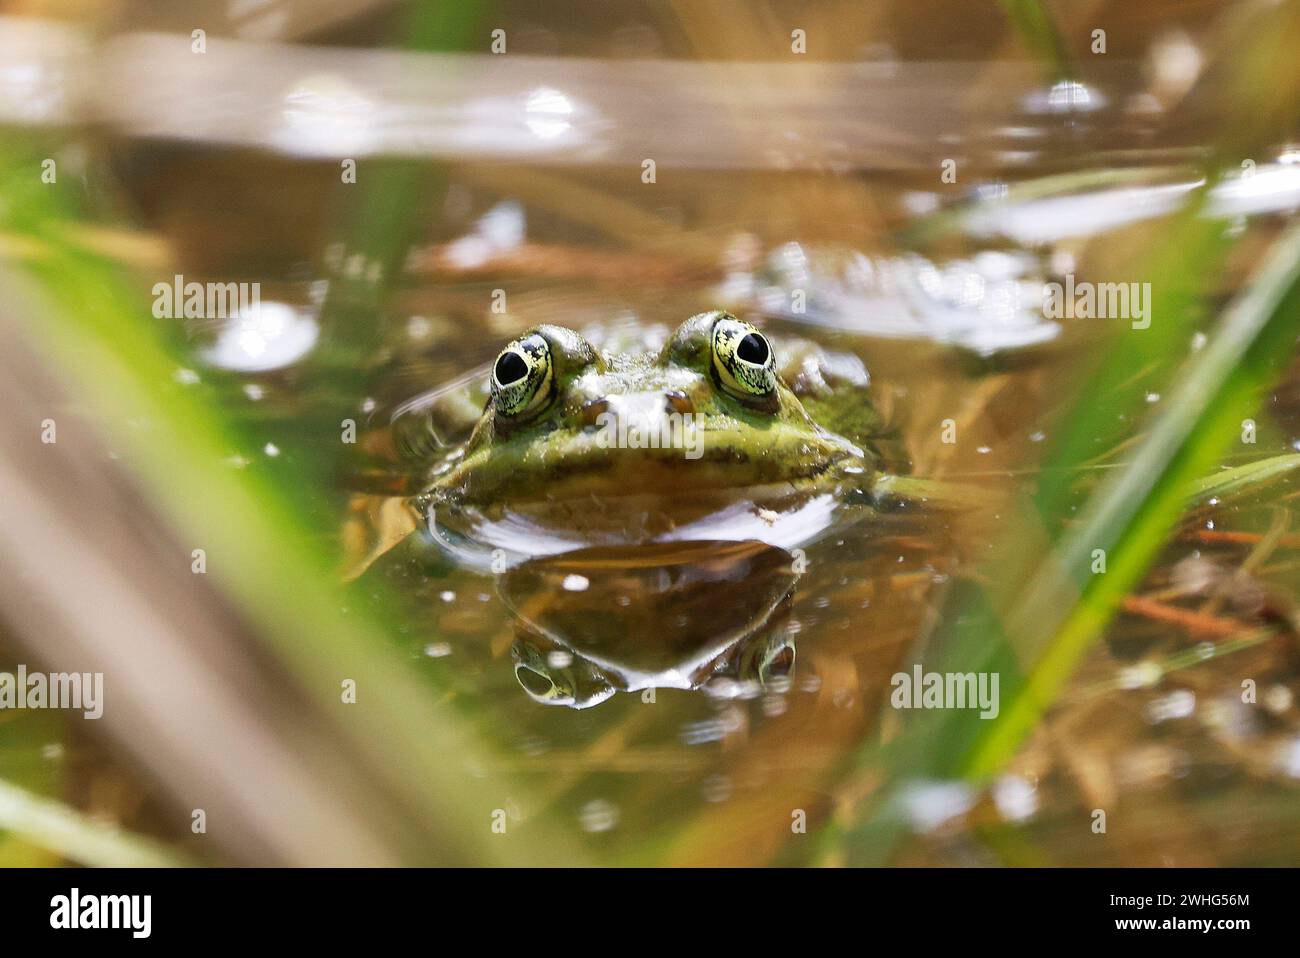 Une grenouille de piscine (Rana lessone) dans l'eau, Ziegeleipark Heilbronn, Allemagne, Europe Banque D'Images